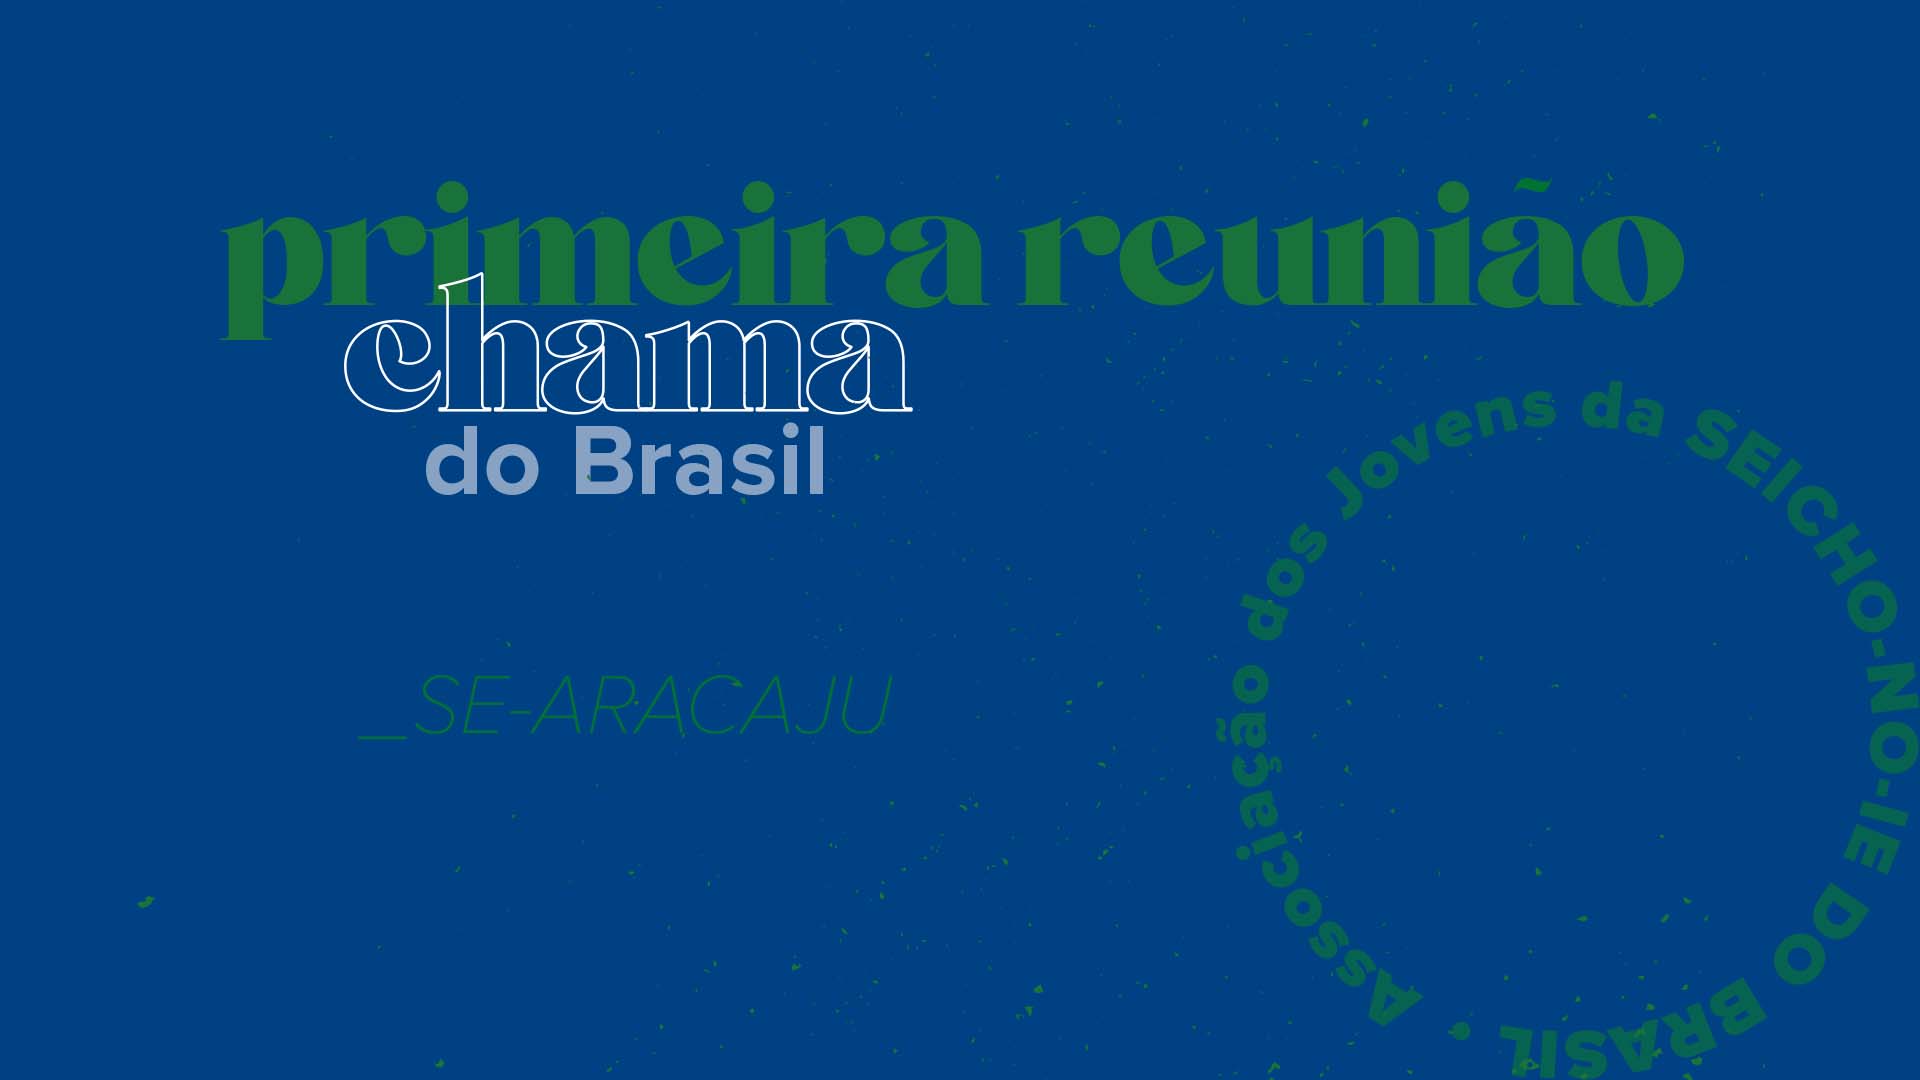 07 reuniaochama 1 Primeira Reunião Chama do Brasil Texto por Maria Nivia Natalia Sousa, Regional SE-ARACAJU.